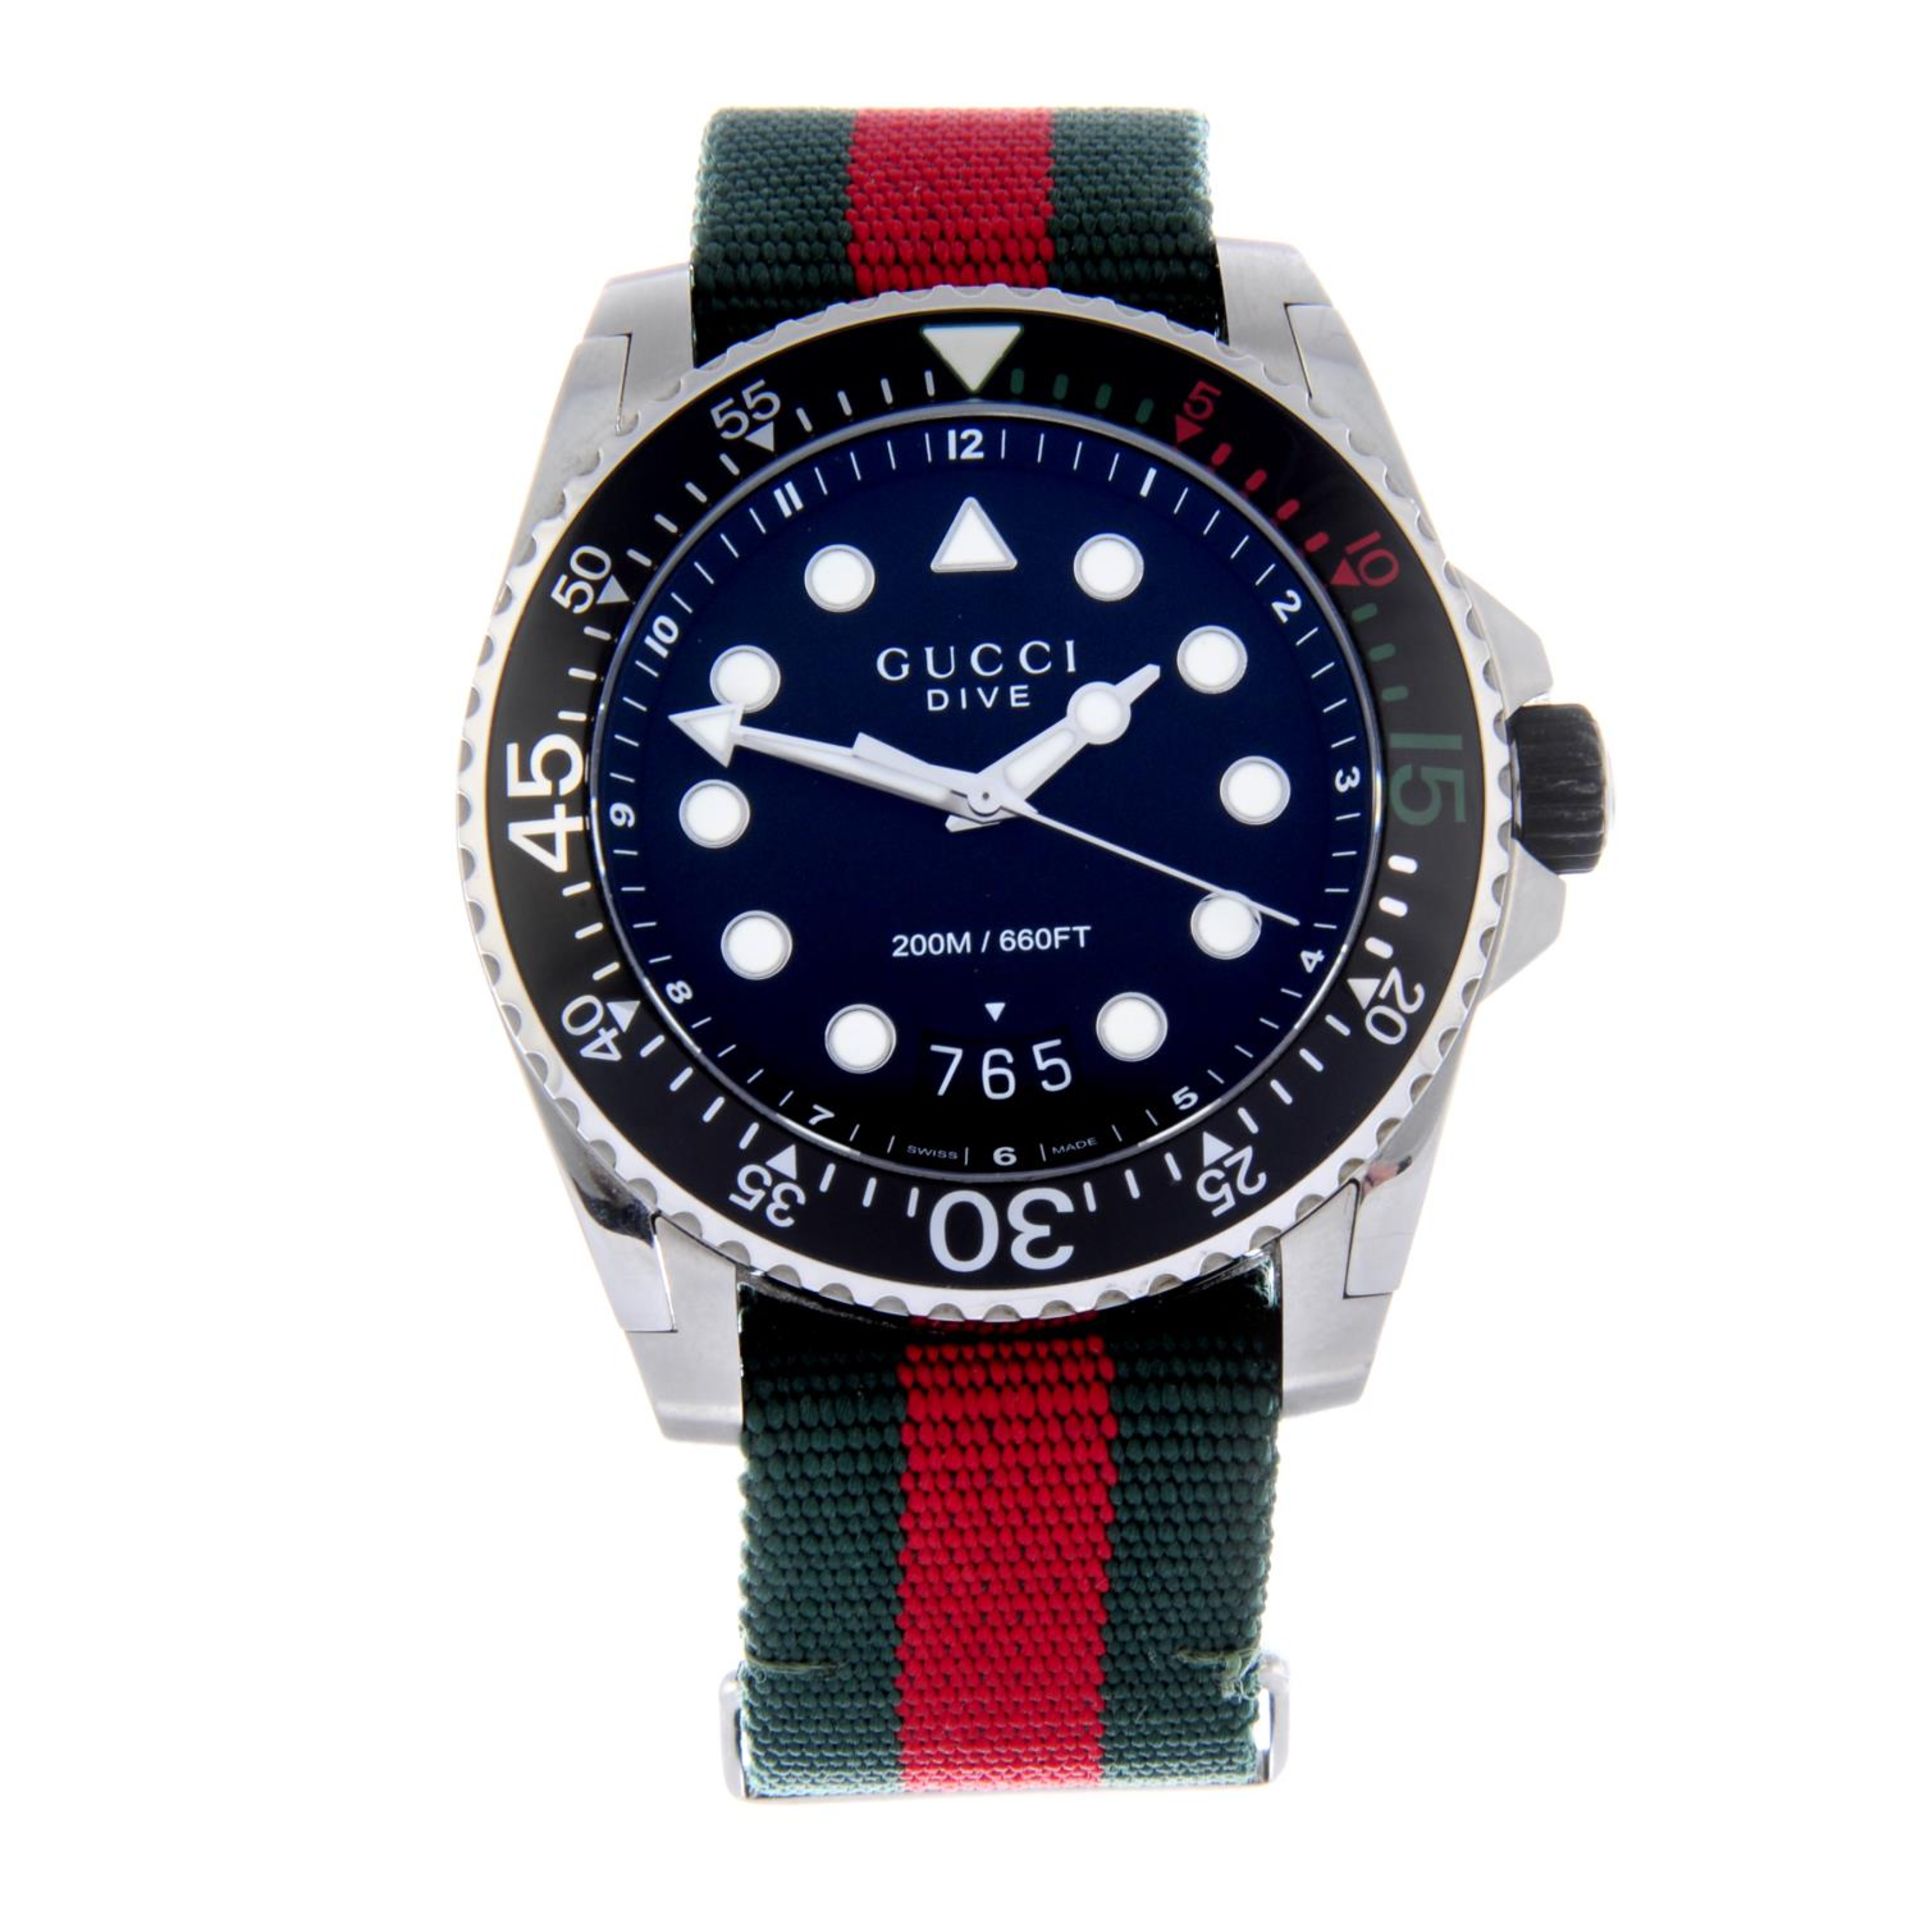 GUCCI - gentleman's Dive wrist watch.